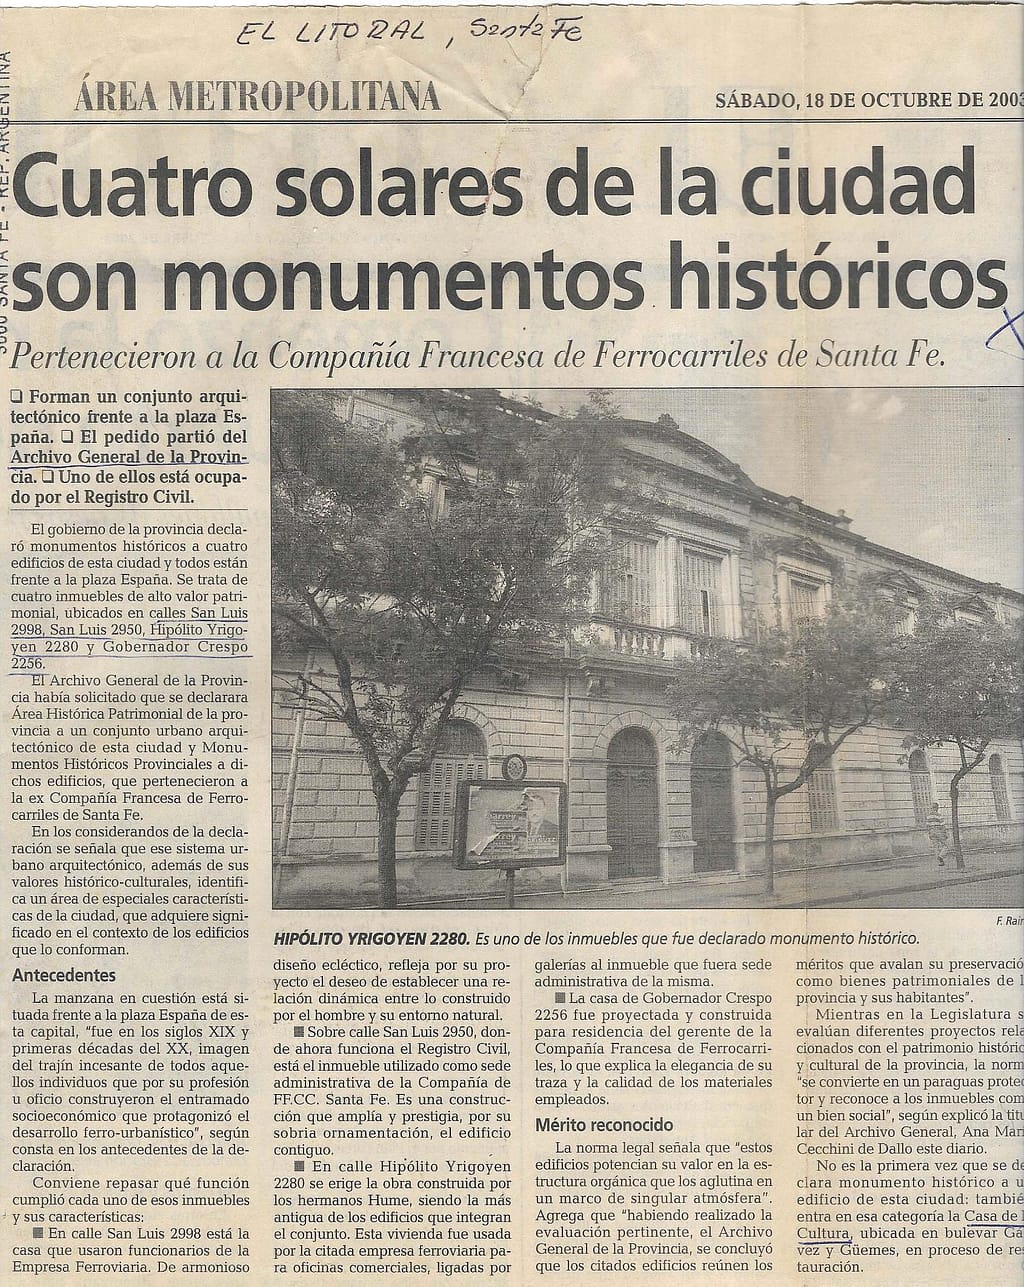 Solares_ciudad_monumentos_historicos_